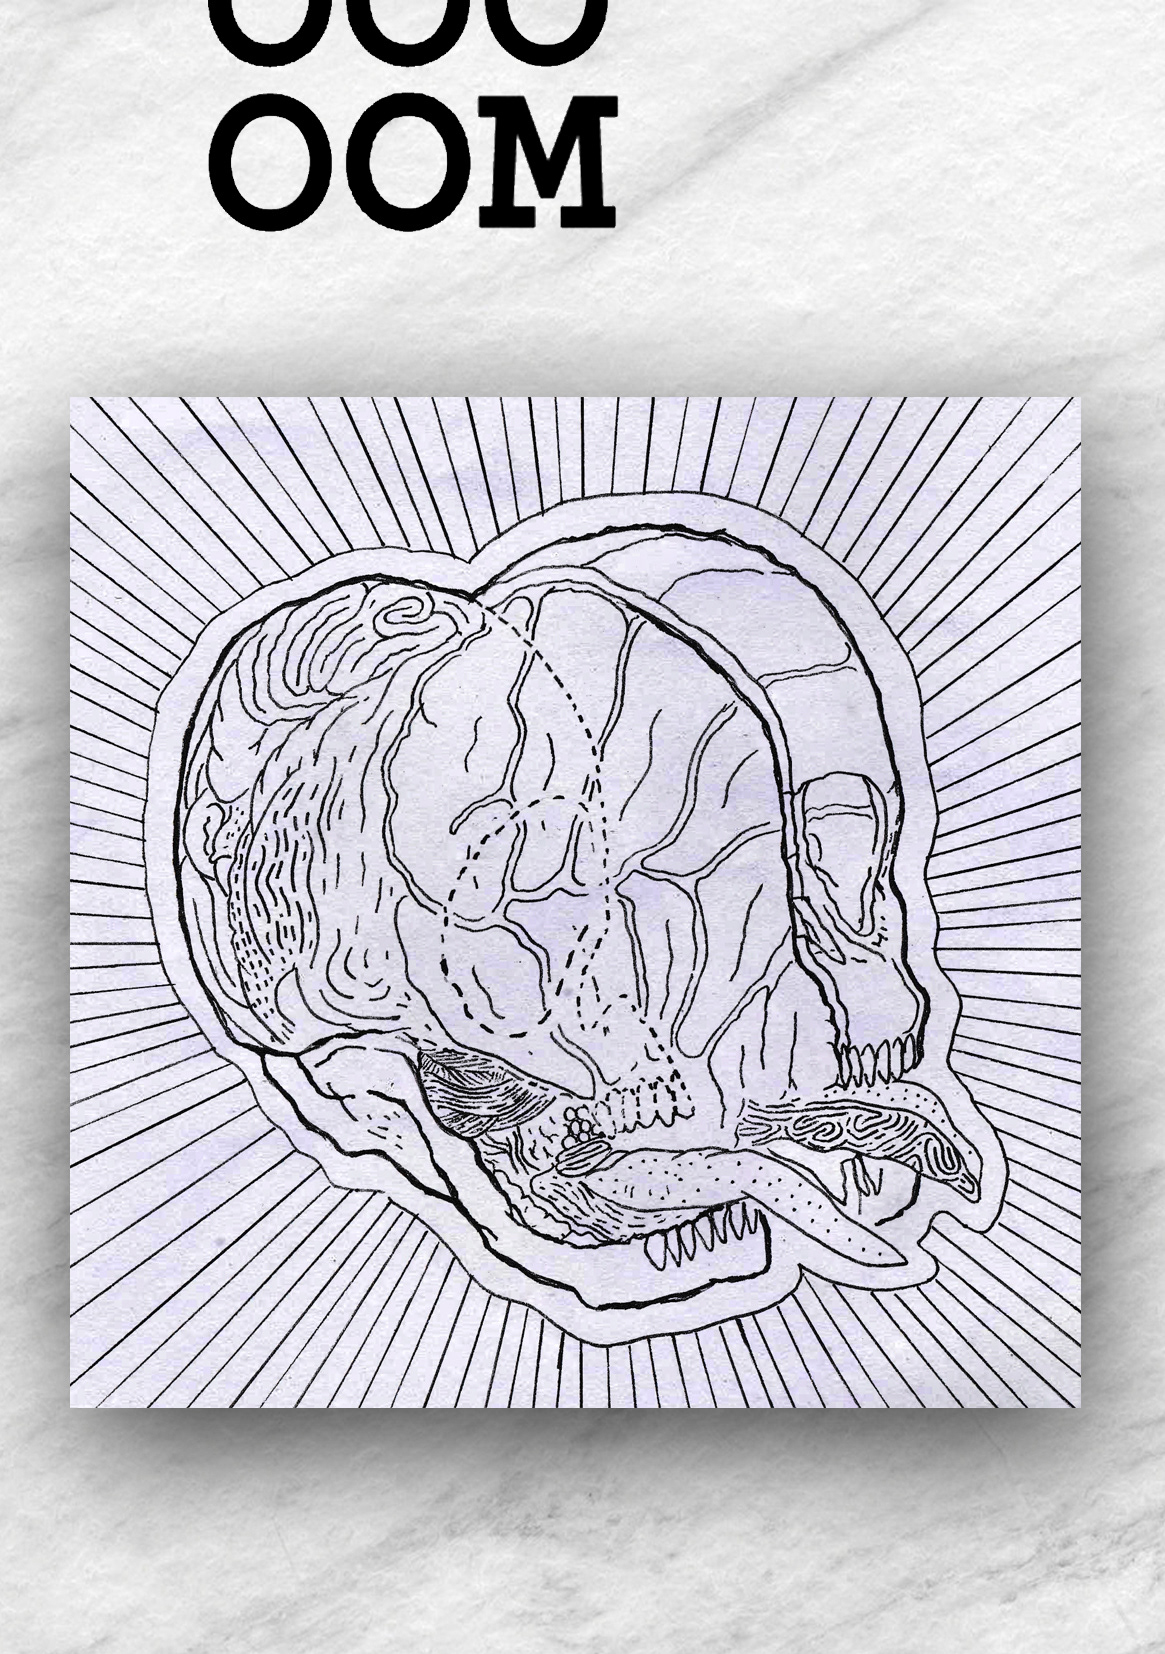 booooooom stickers contest skull hologram